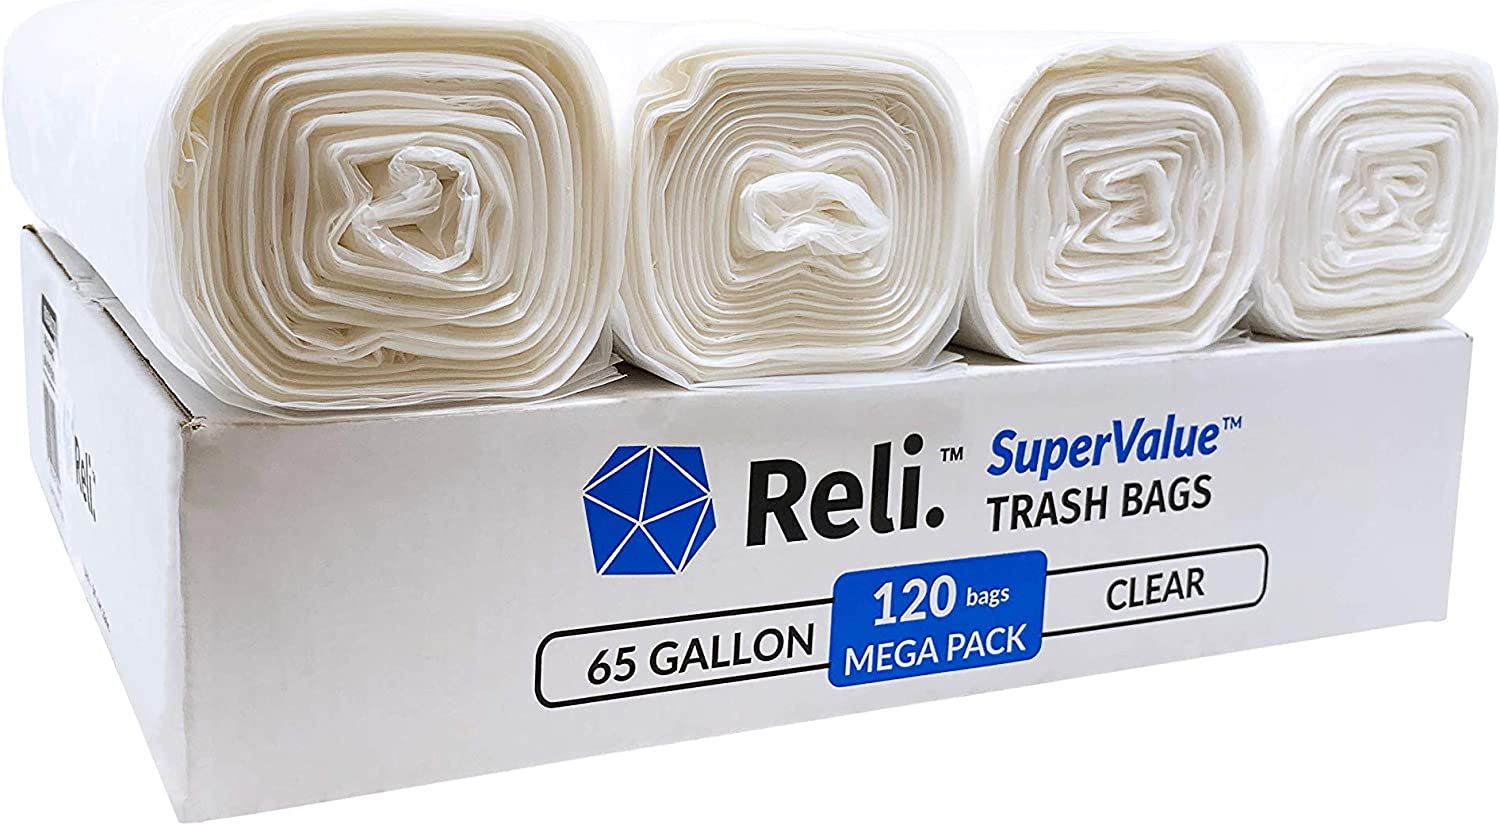 Reli. SuperValue 65 Gallon Trash Bags 120 Count, Black